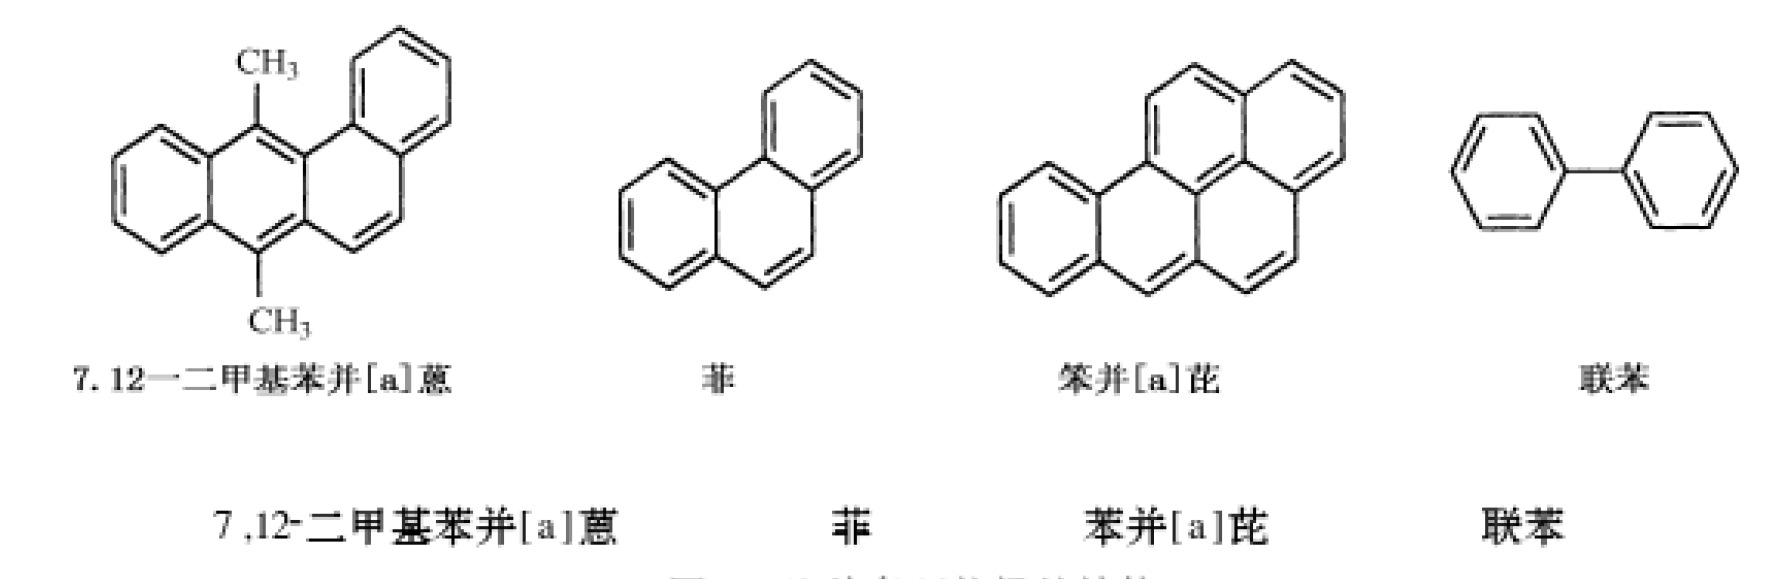 常见的几种多环芳烃.jpeg